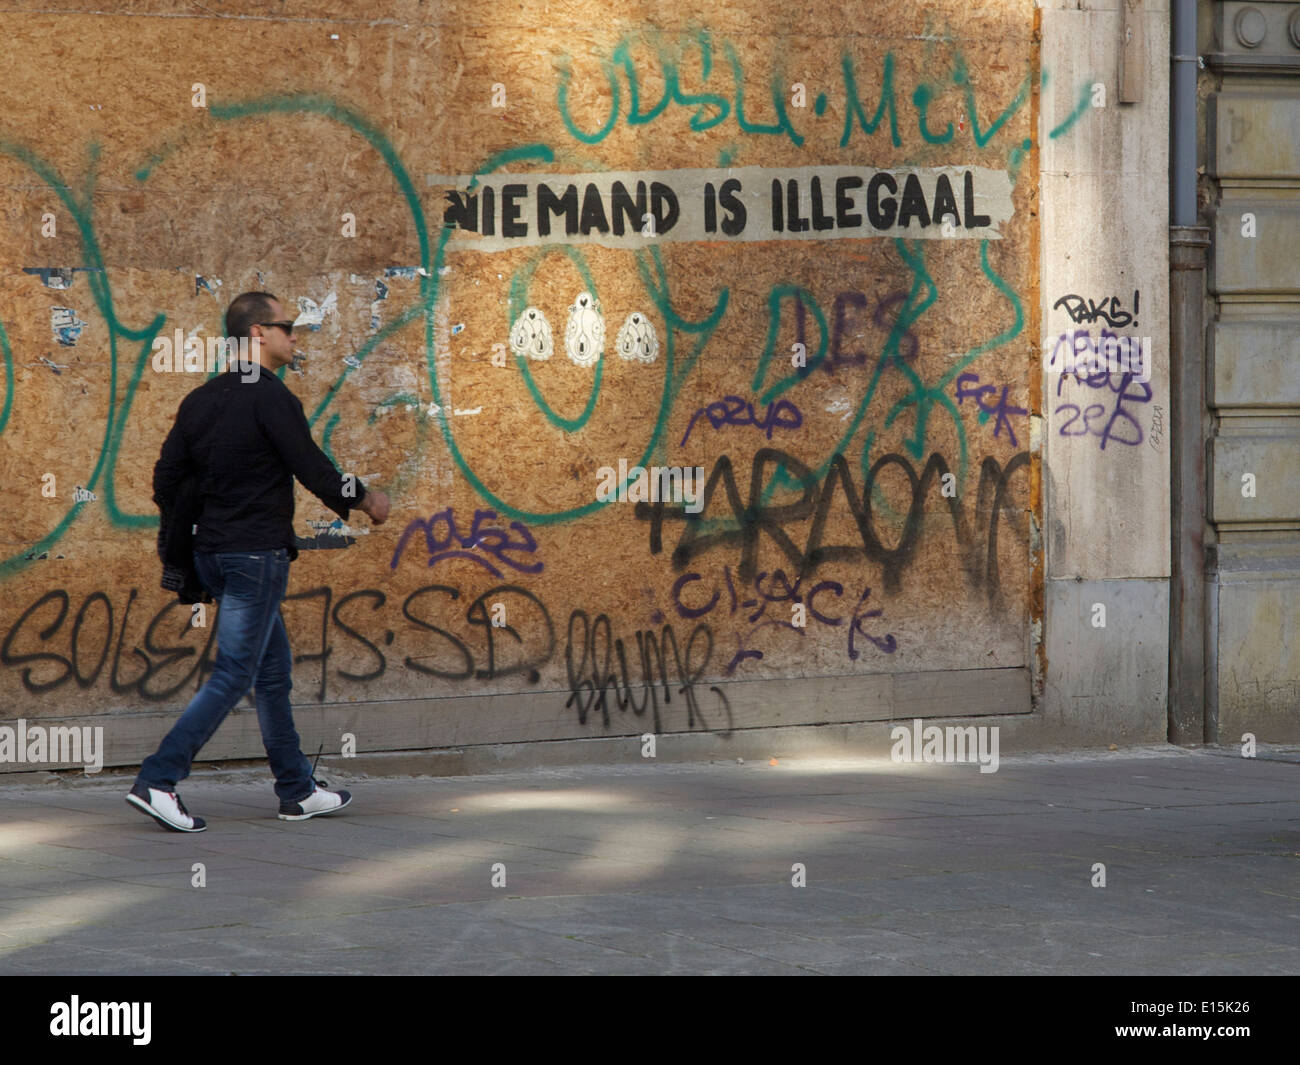 Homme marchant dans une rue de graffitis disant personne n'est illégal en langue néerlandaise, Bruxelles, Belgique Banque D'Images